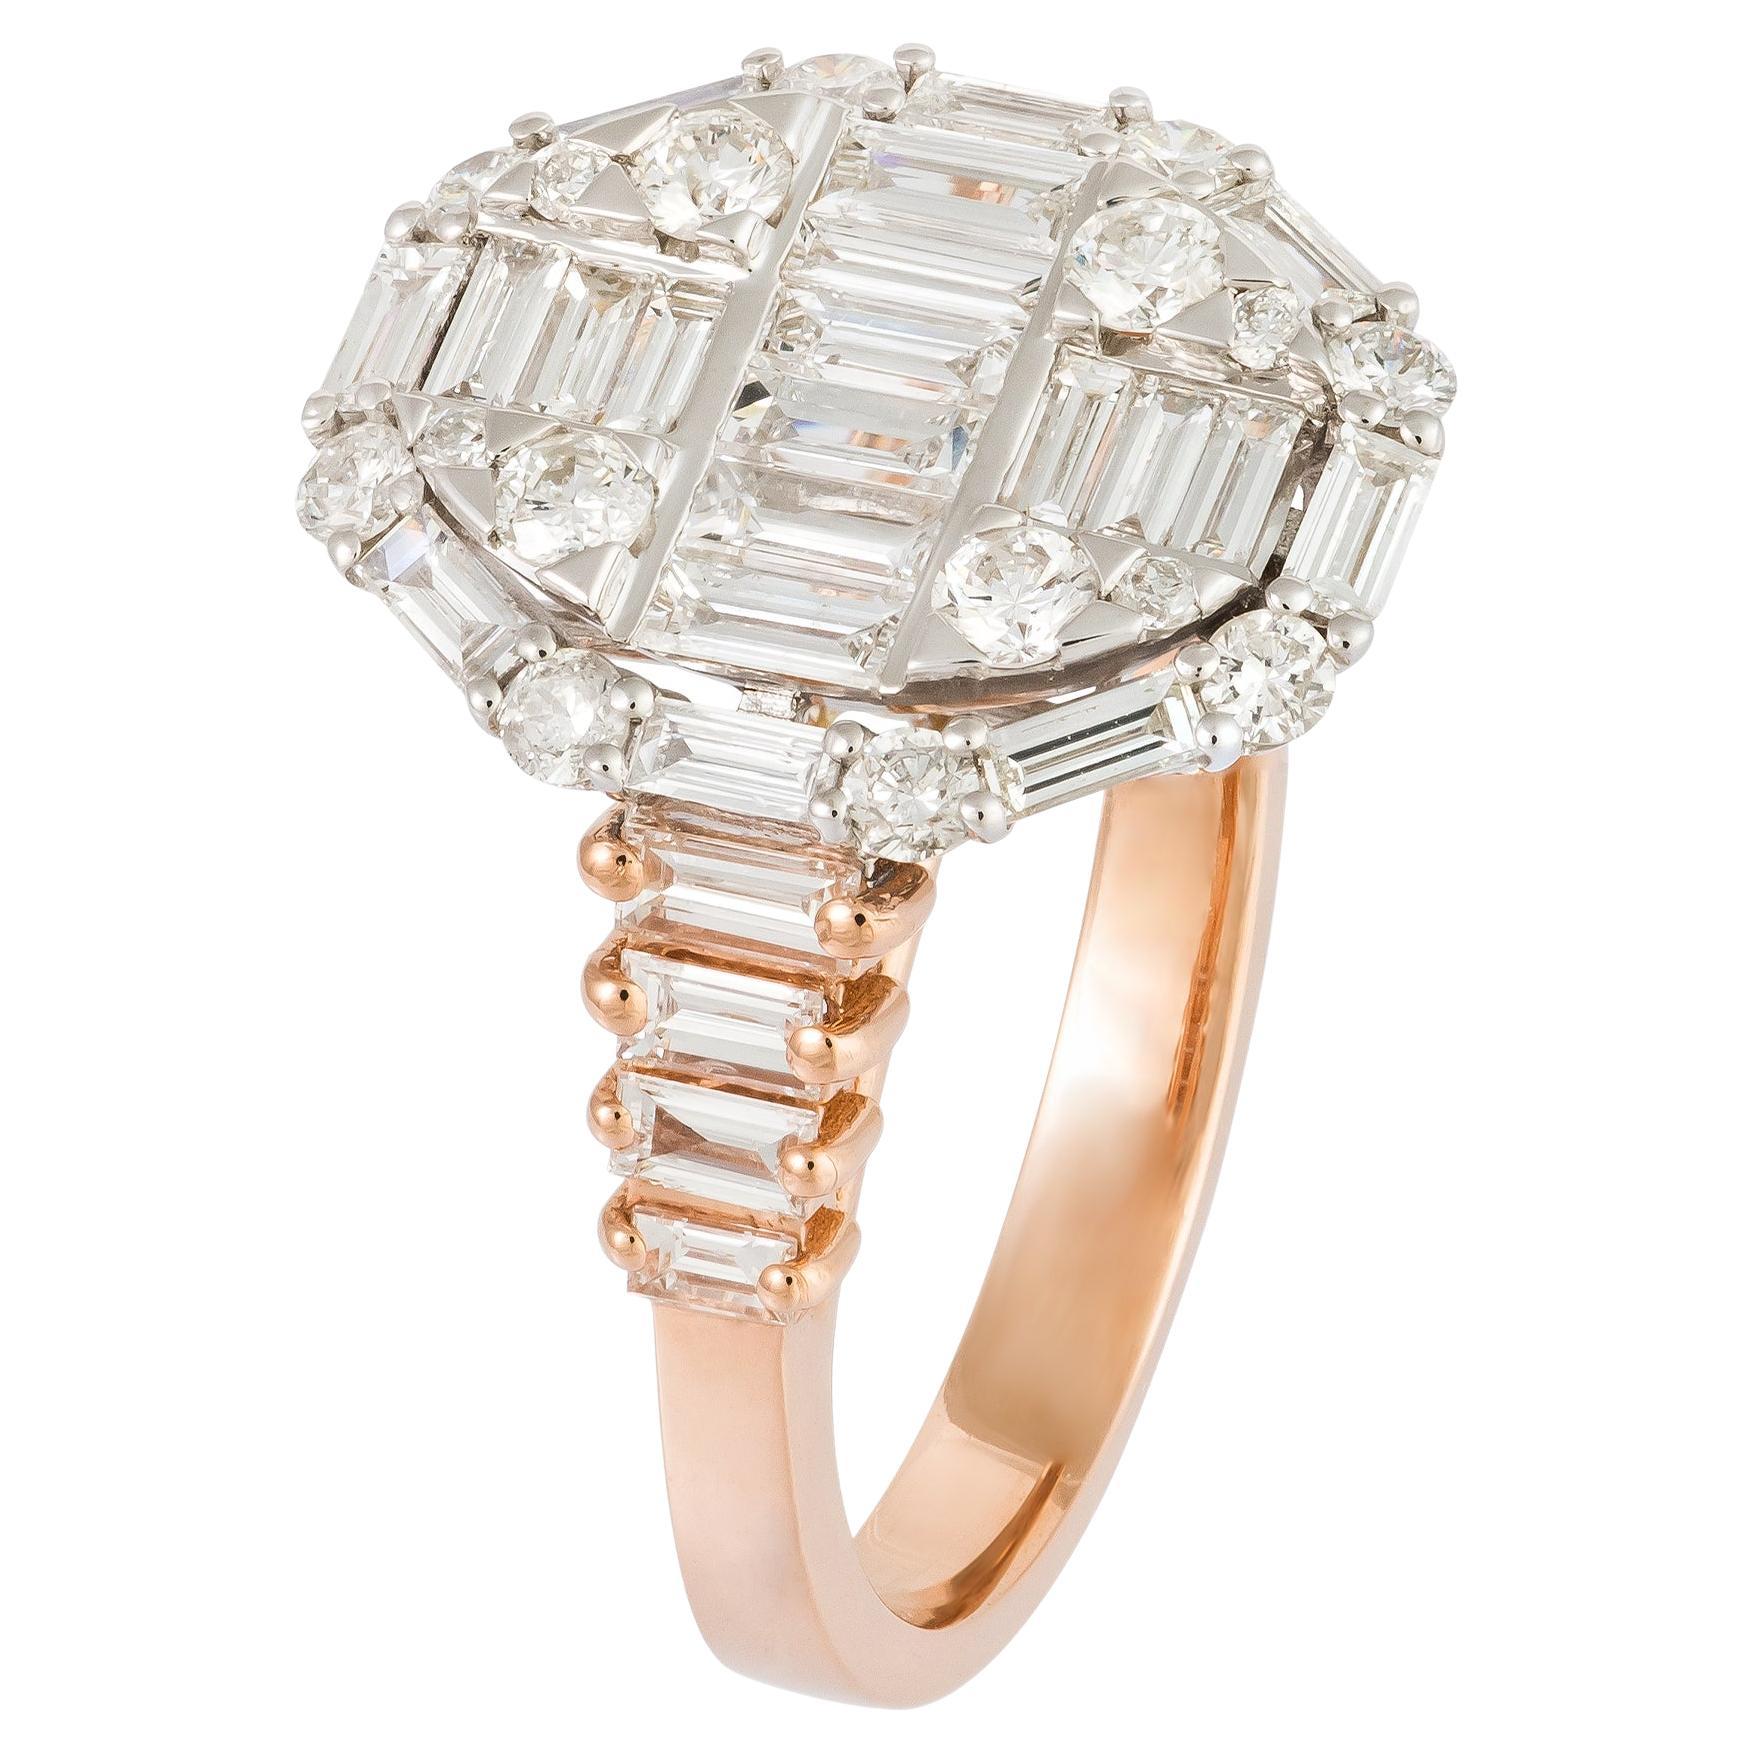 Impressive Pink 18K Gold White Diamond Ring For Her